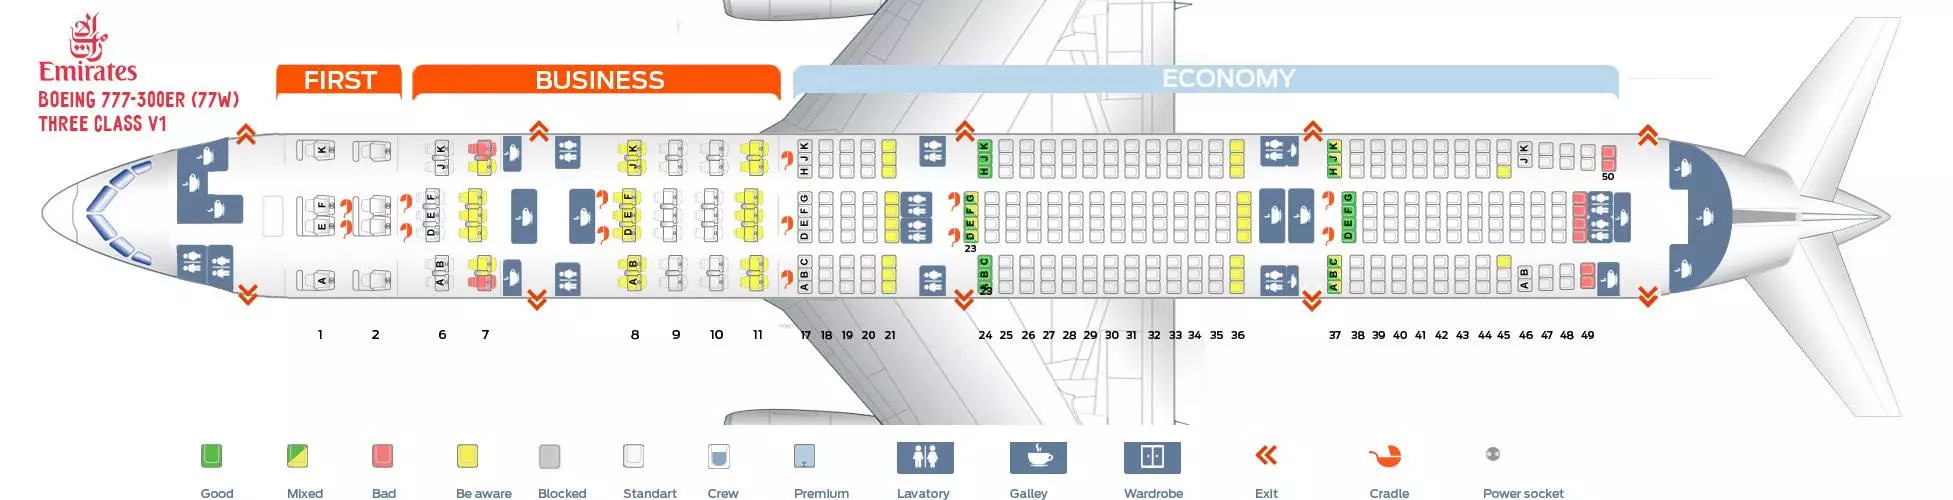 Боинг 777-300 «аэрофлот»: схема салона, лучшие места, фото и видео самолета